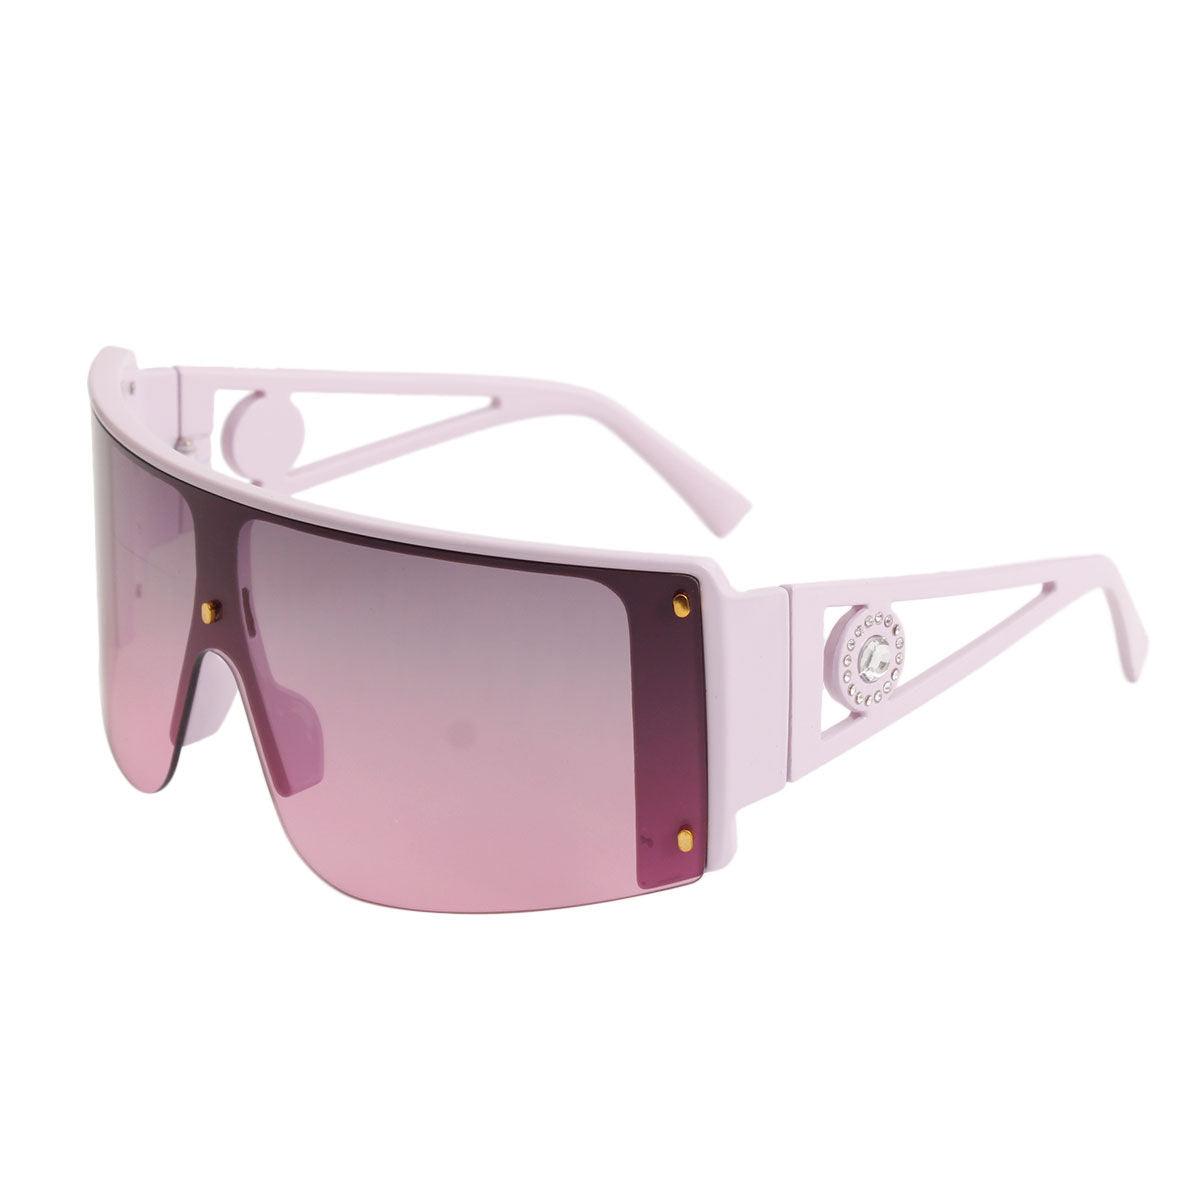 Lavender Frame Visor Elevate Stylish Sunglasses for Women